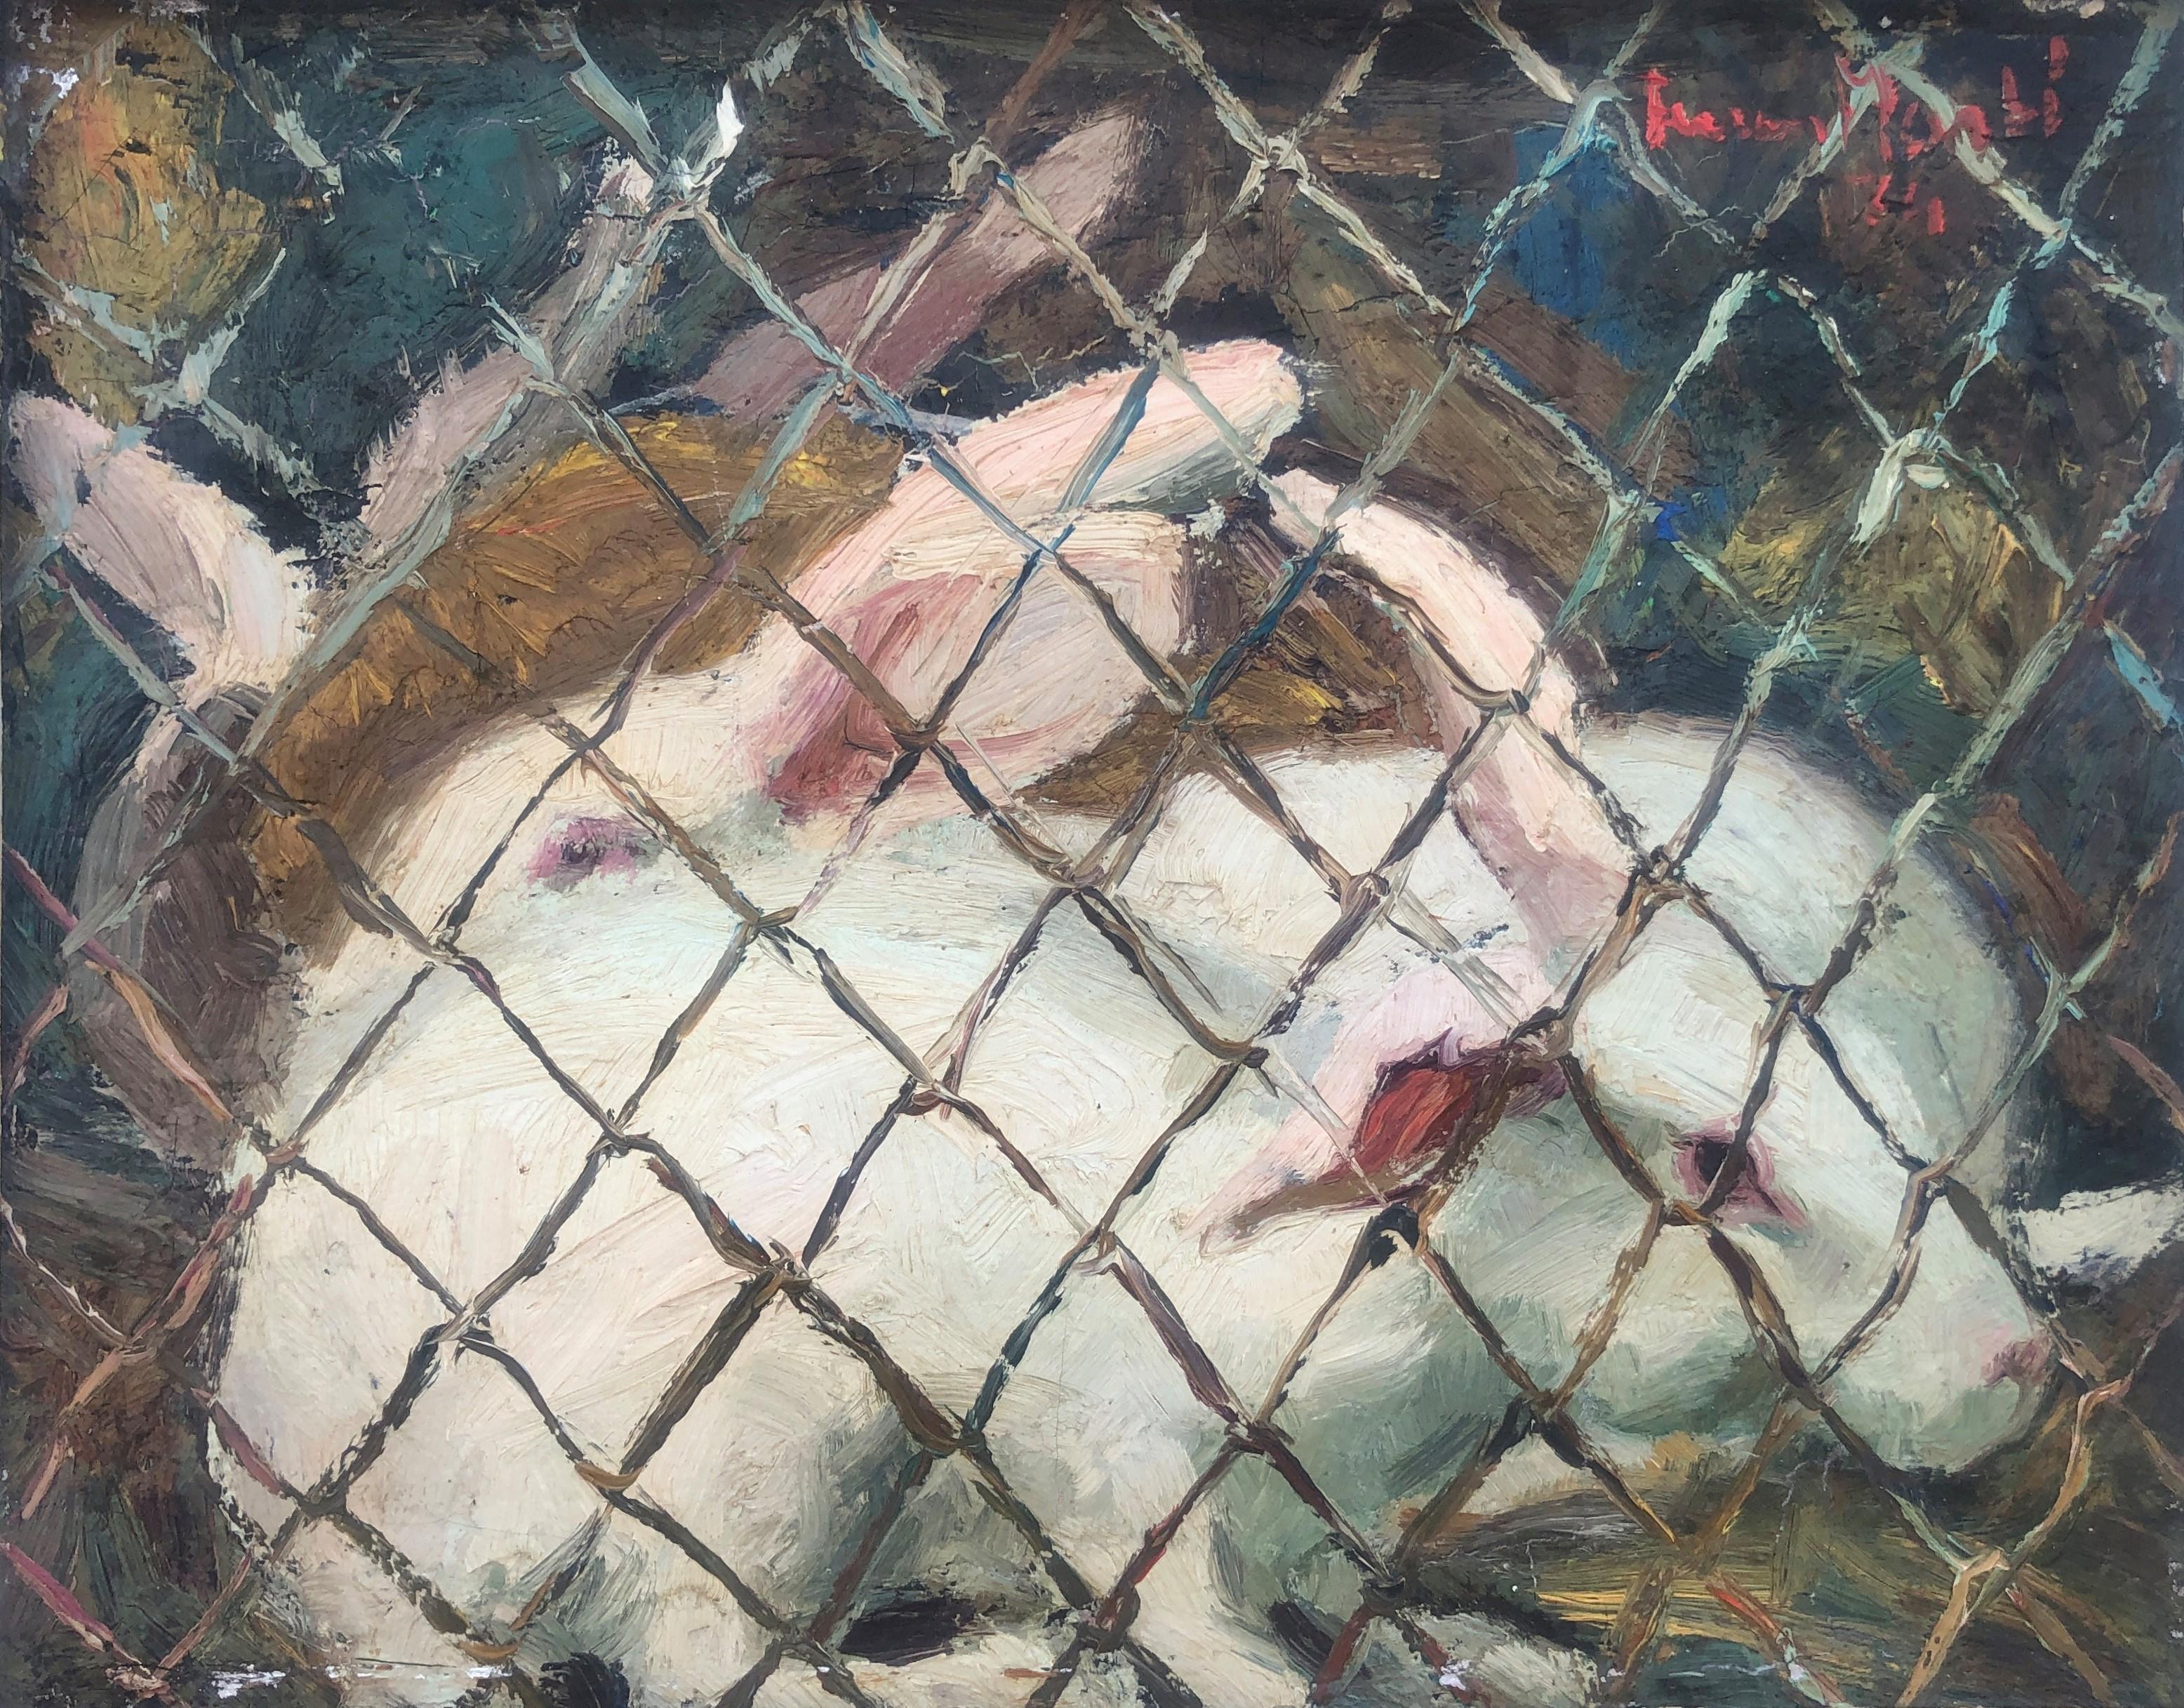 Animal Painting Ferran Marti - Peinture à l'huile sur toile - Scène de lapins en cage avec animaux